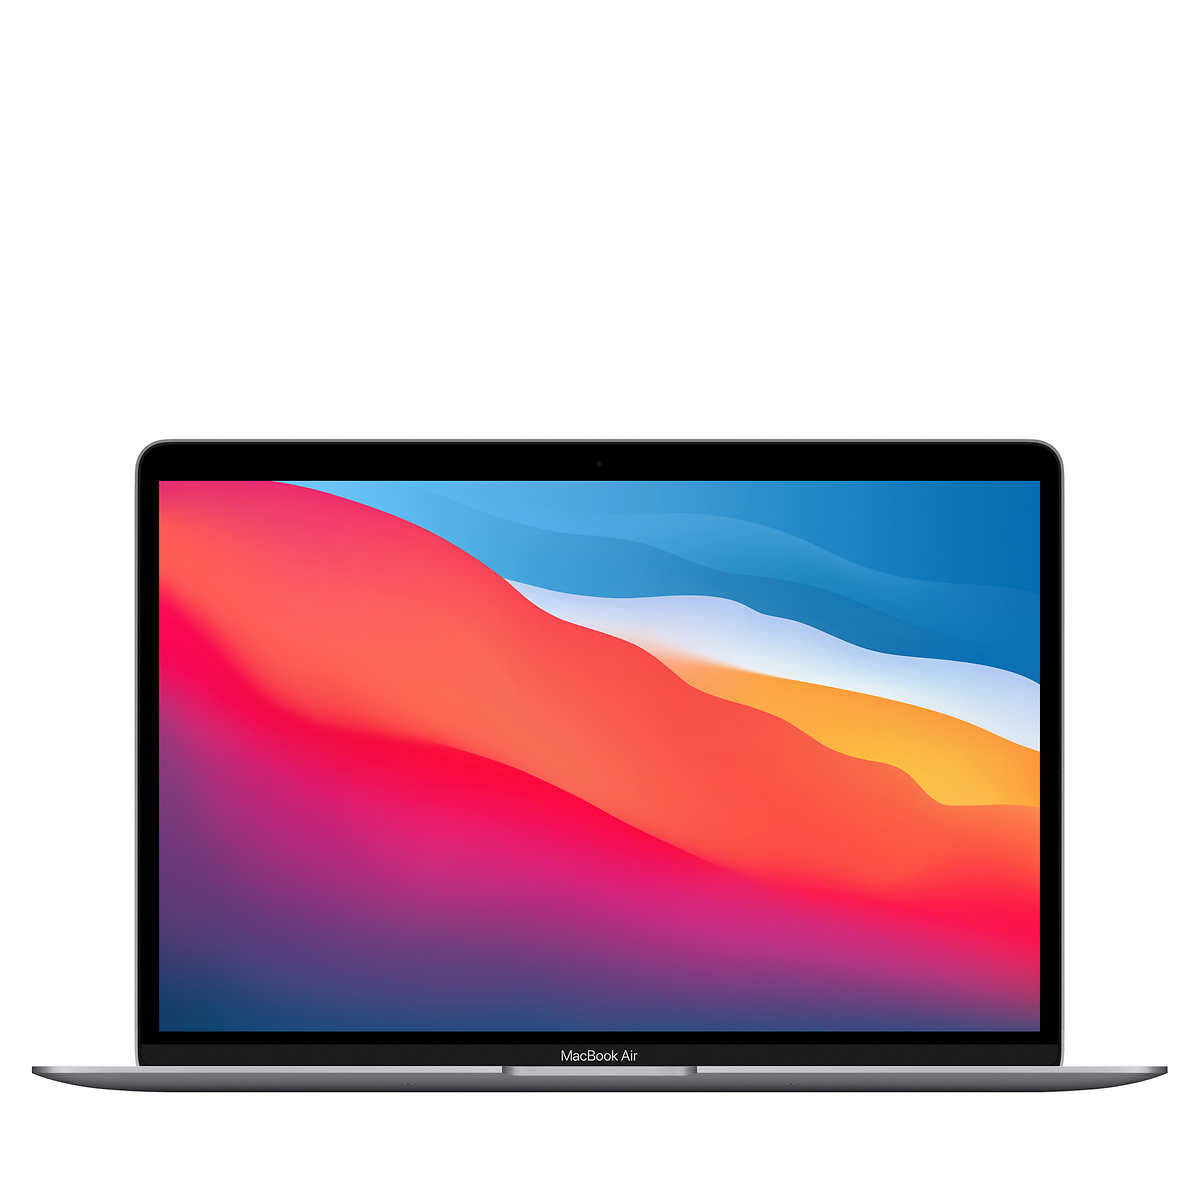 MacBook Air 13.3" - Apple M1 Chip 8-core CPU, 7-core GPU - 8GB Memory - 256GB SSD Space Gray - $799.99